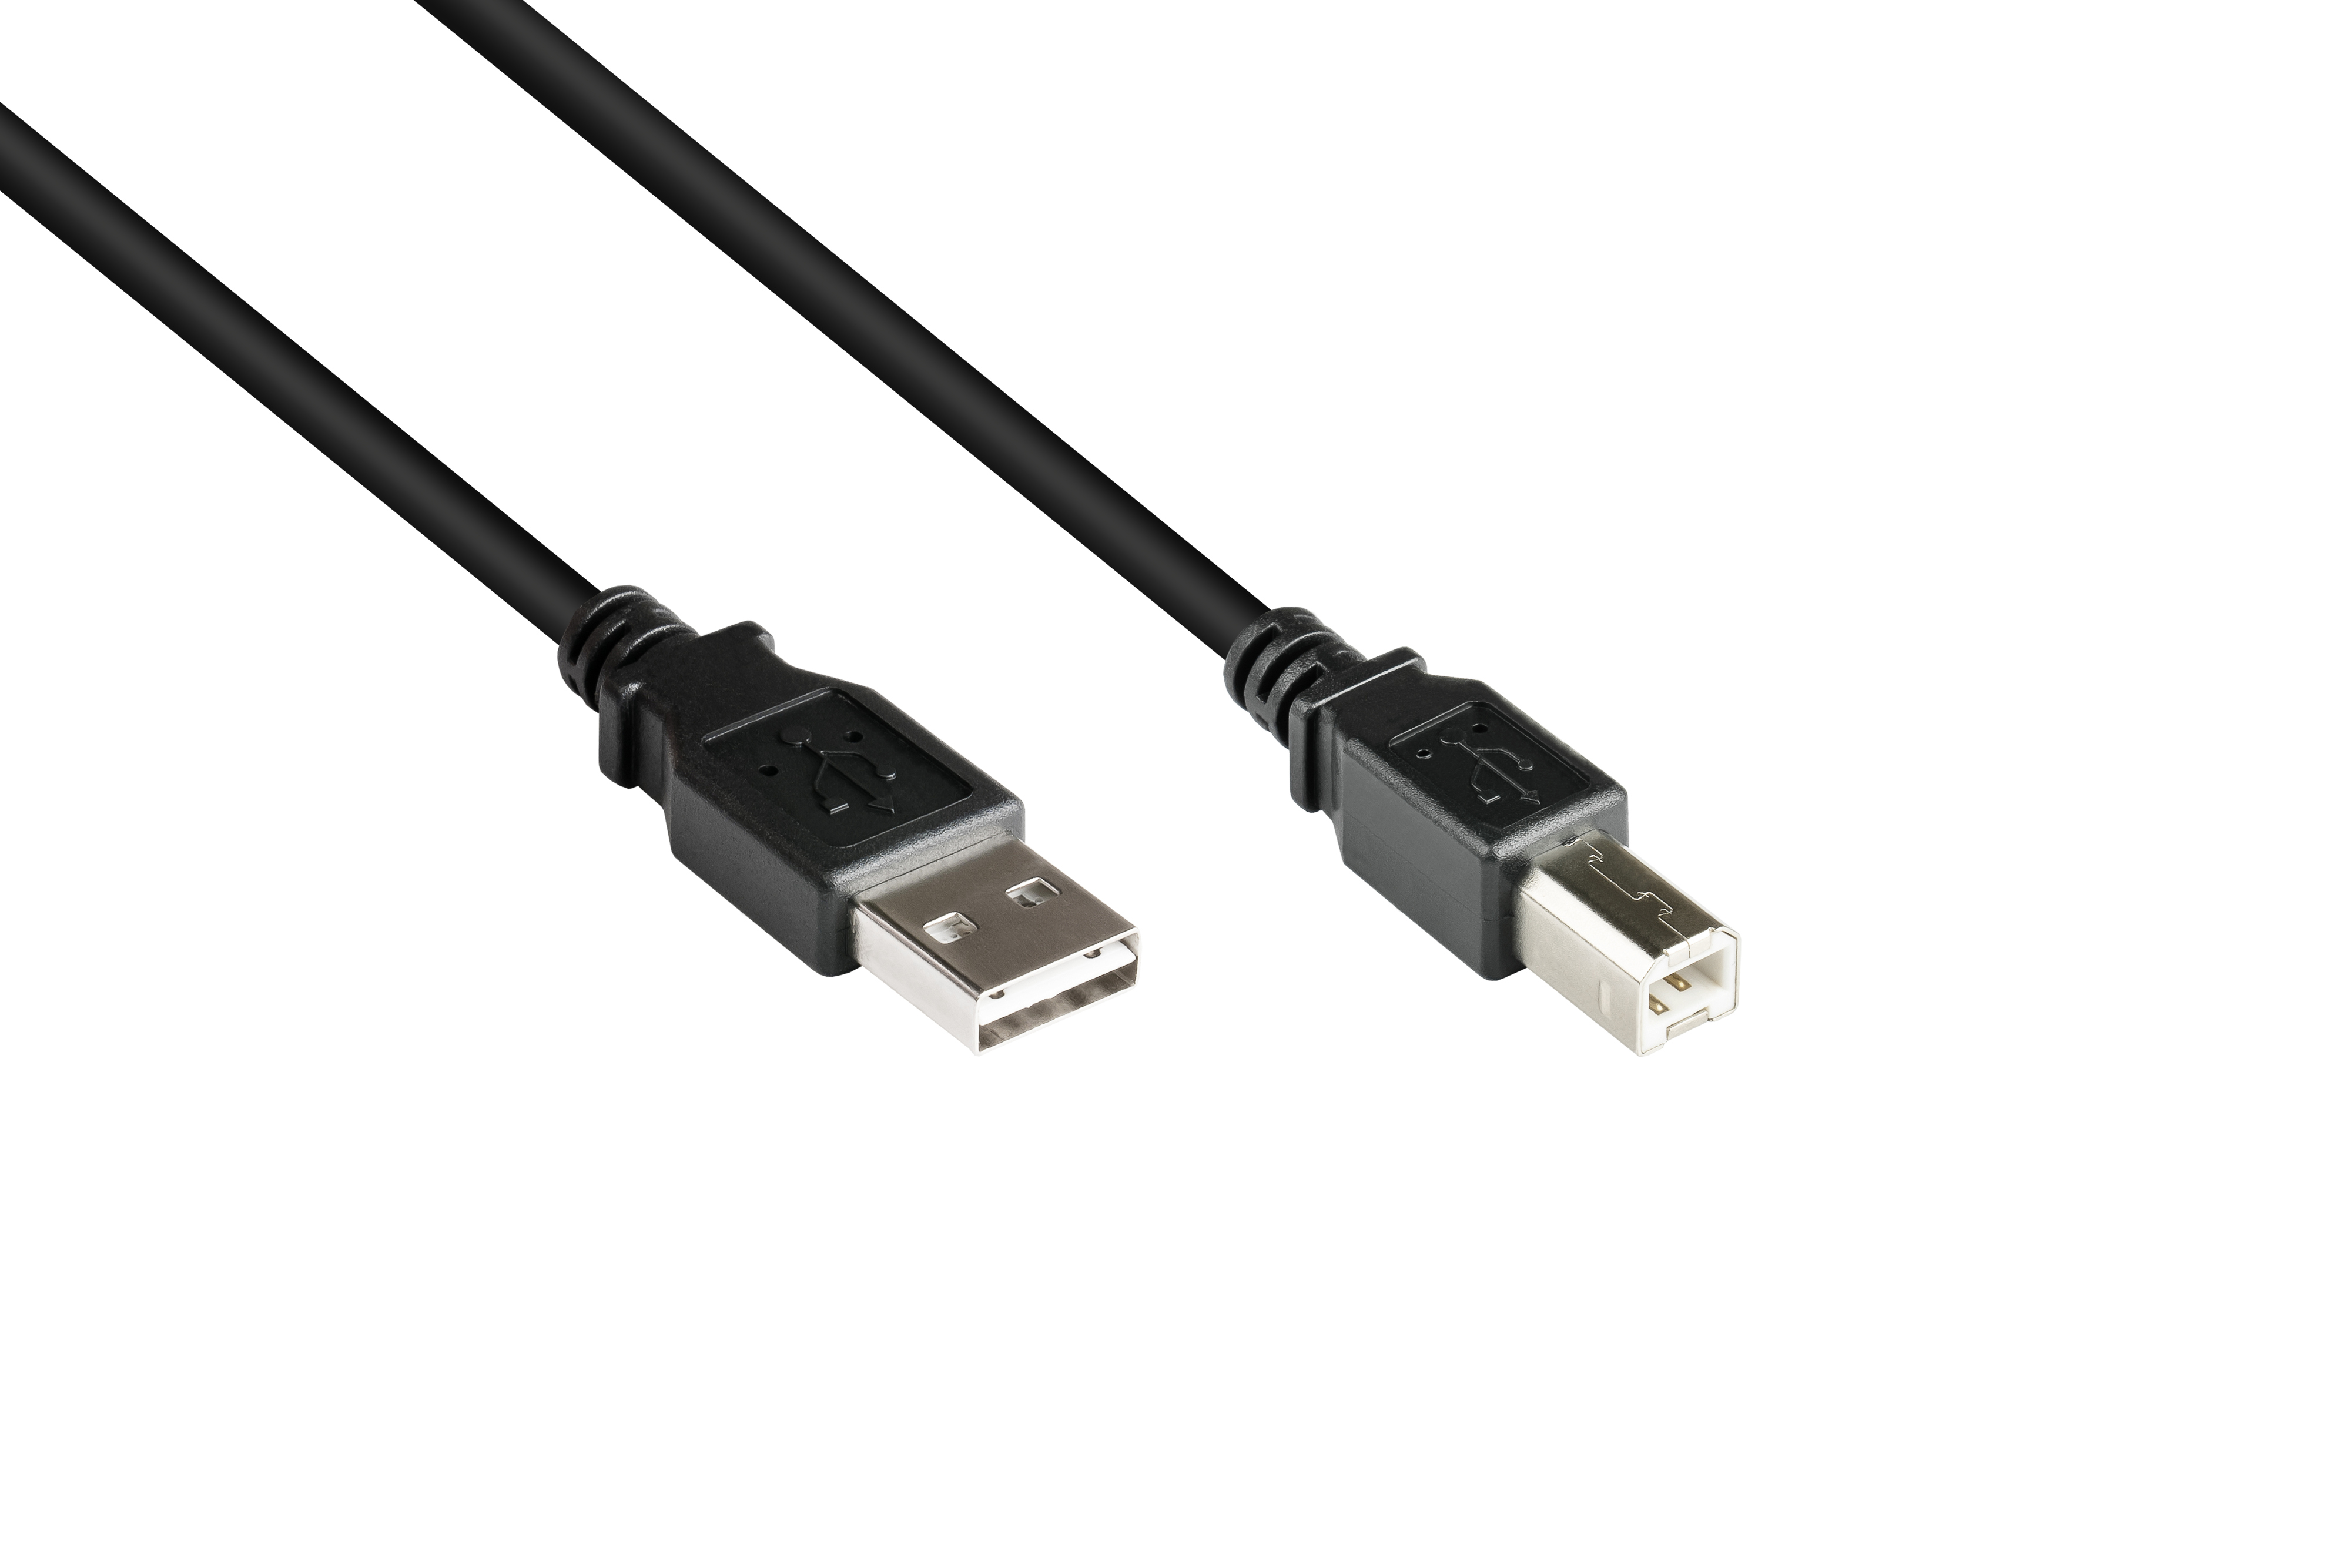 USB Anschlusskabel Stecker A Stecker EASY 2.0 B, GOOD schwarz an CONNECTIONS